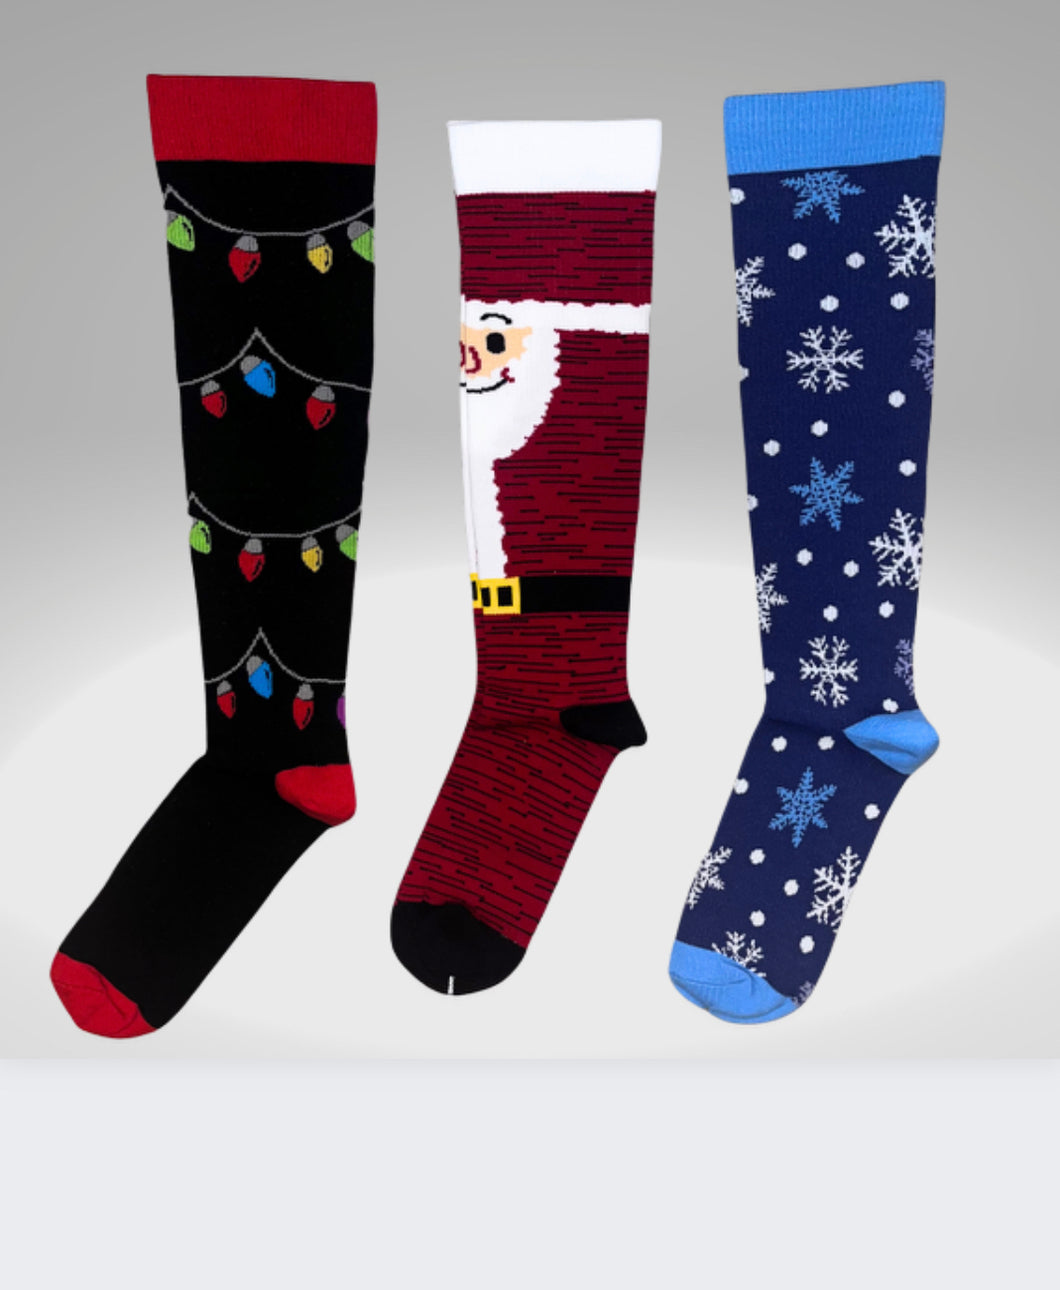 Christmas - Compression Socks Bundle – Be Light Compression